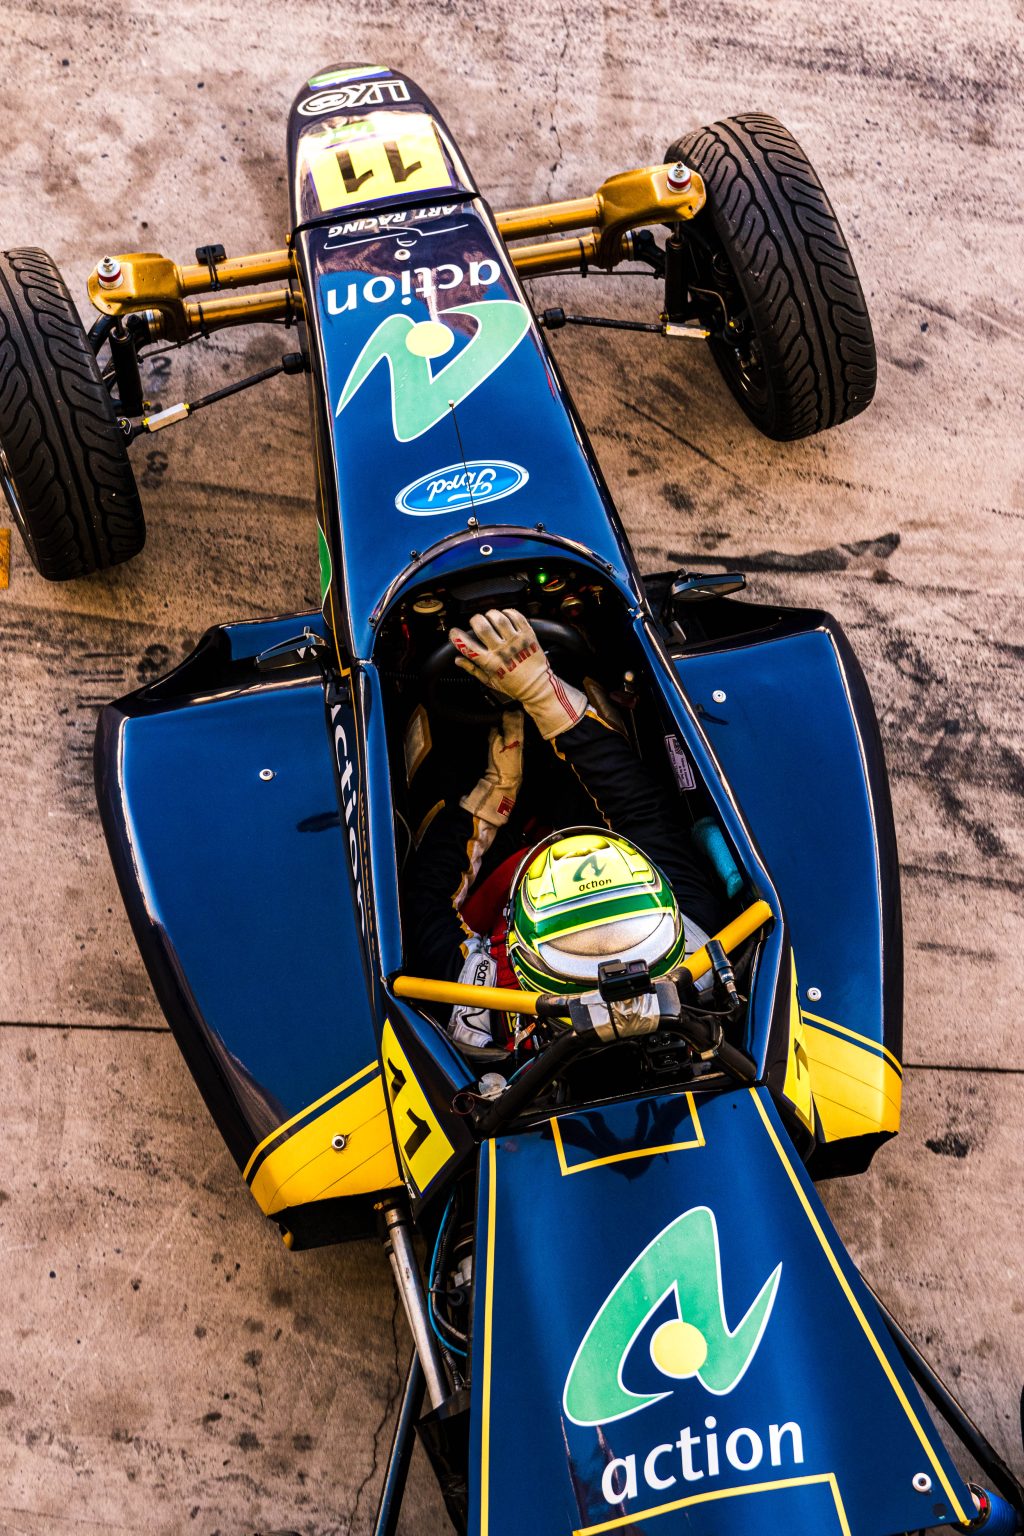 Lucas Freitas em ação no Autódromo de Interlagos Fotos: Everton Eifert